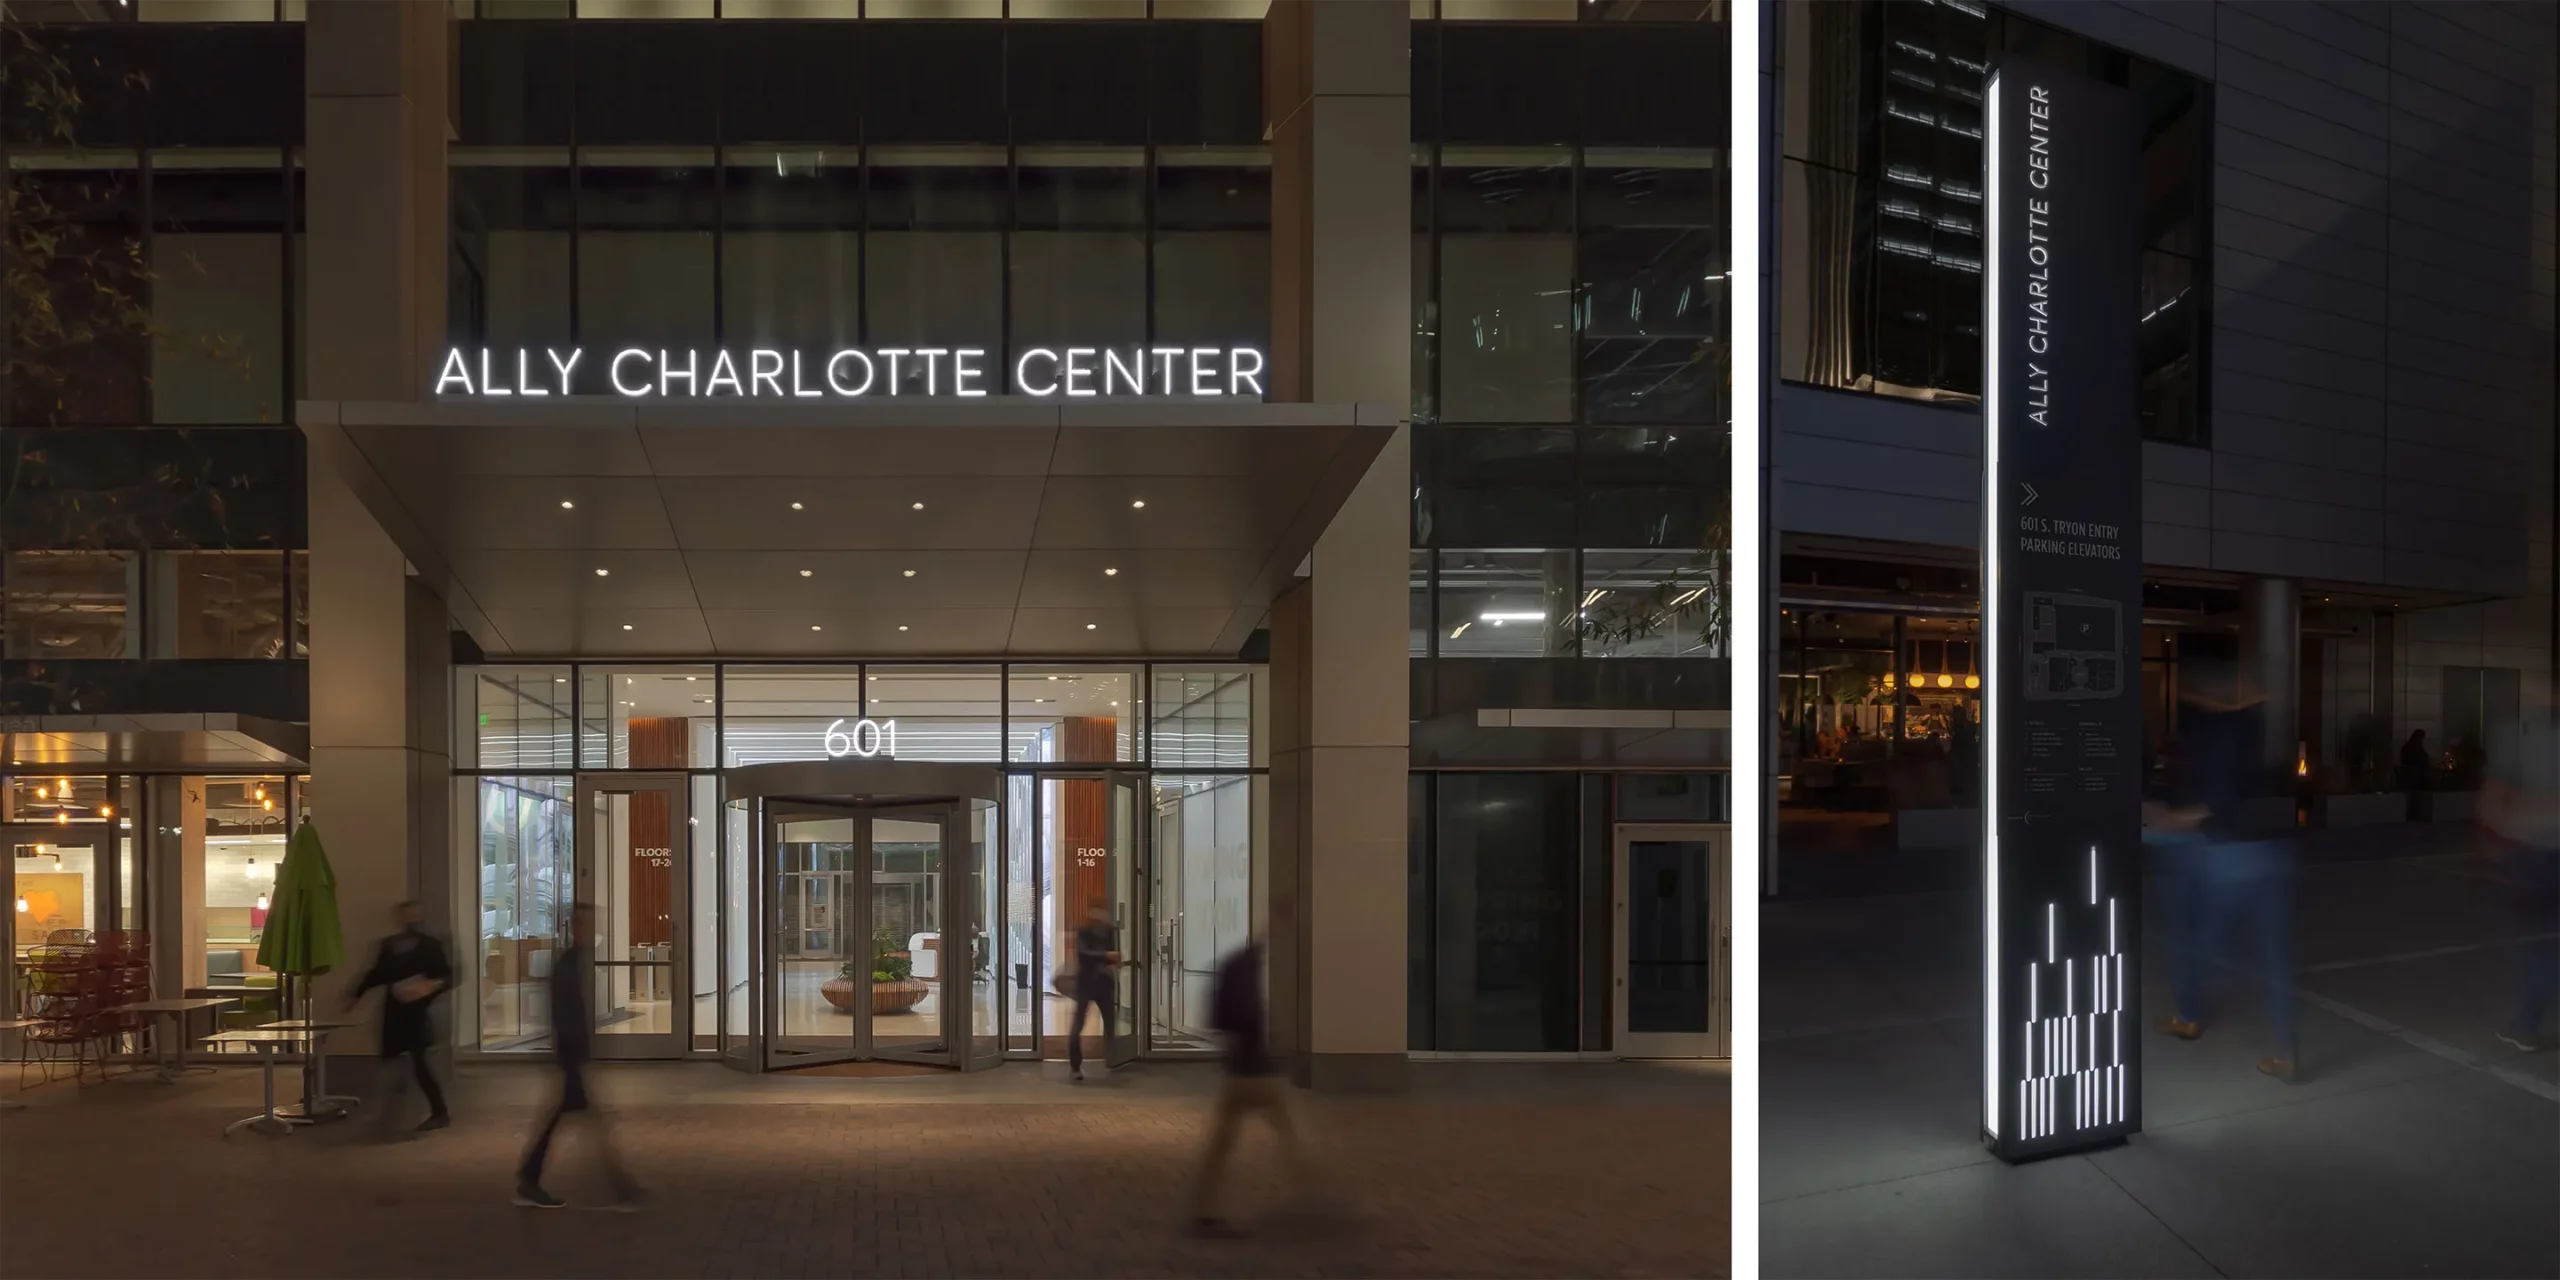 Ally Charlotte Center, Illuminated Signage